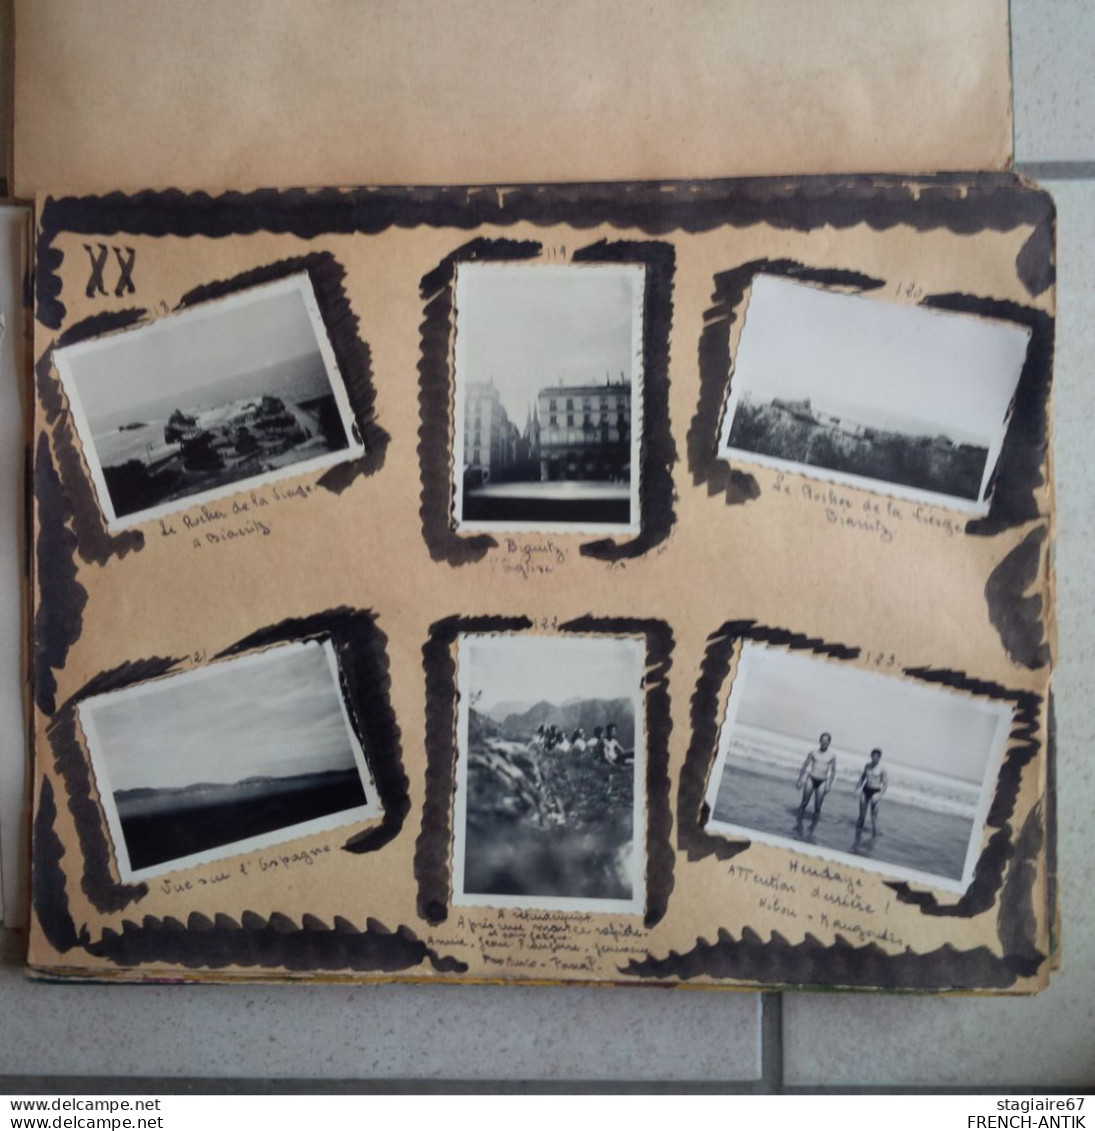 ALBUM PHOTO LE CAUTERETS 1949 SCOUTISME DEGUISEMENT CAMPING ENVIRON 170 - Albums & Collections